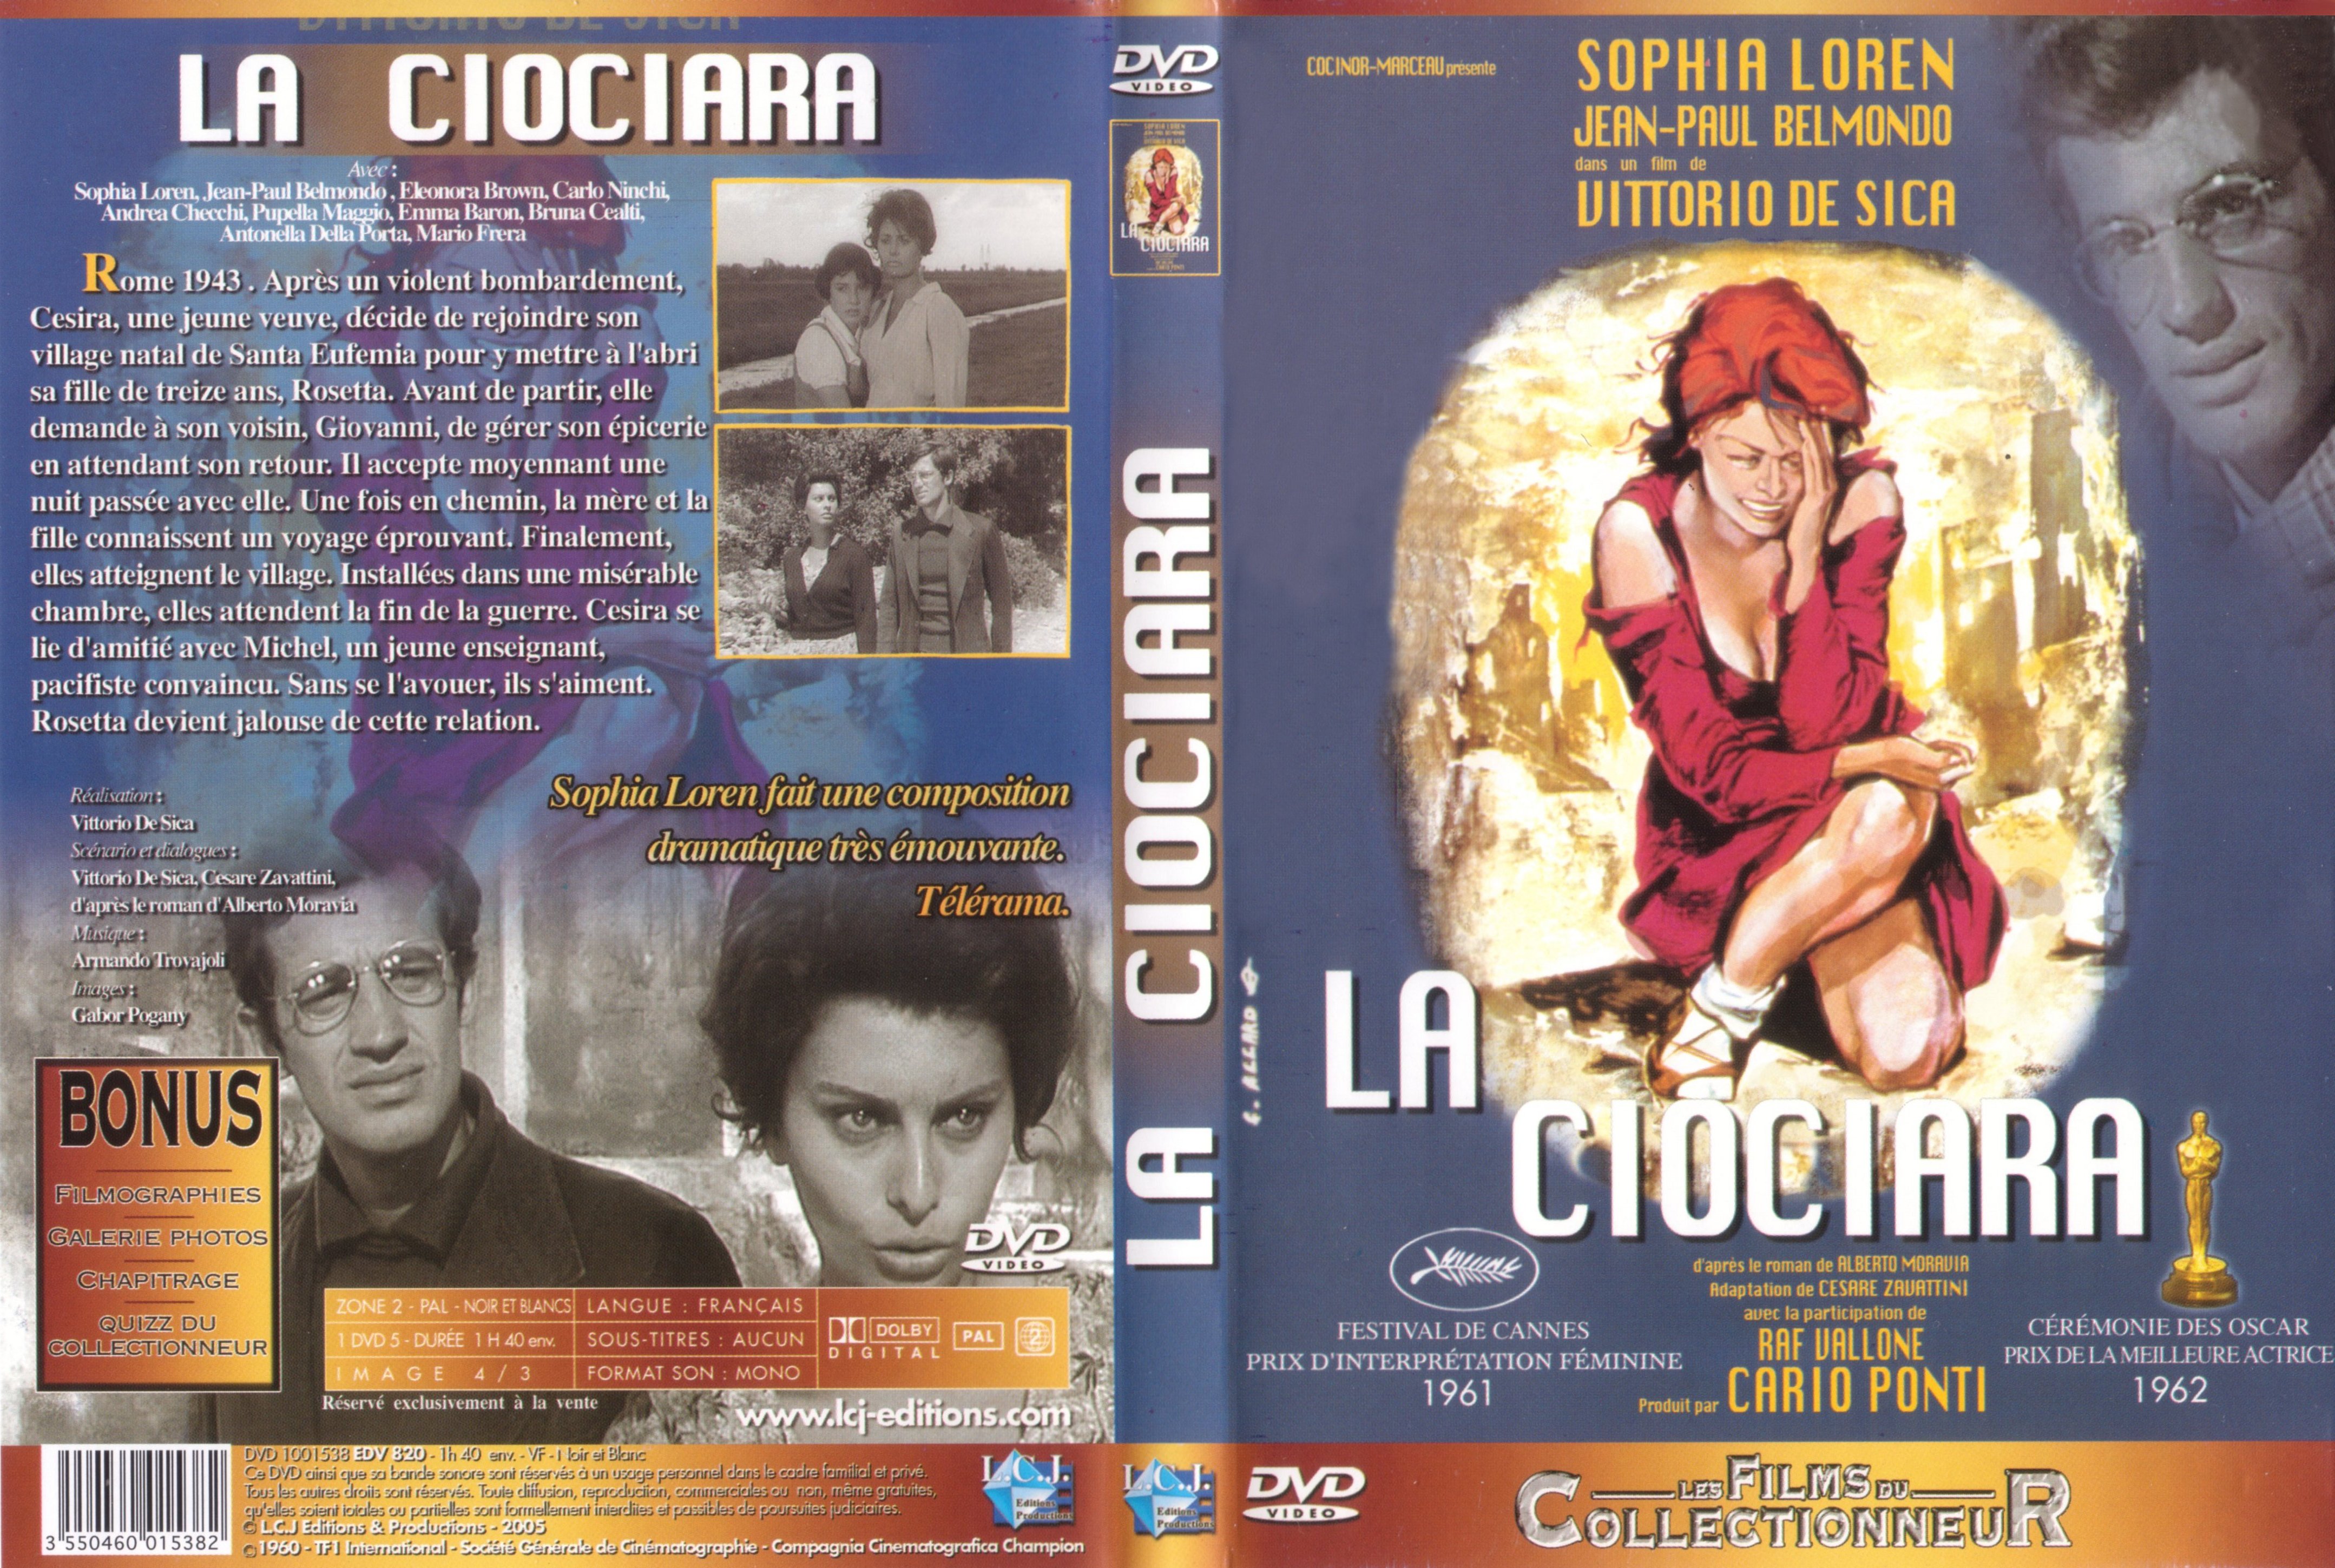 Jaquette DVD La ciociara